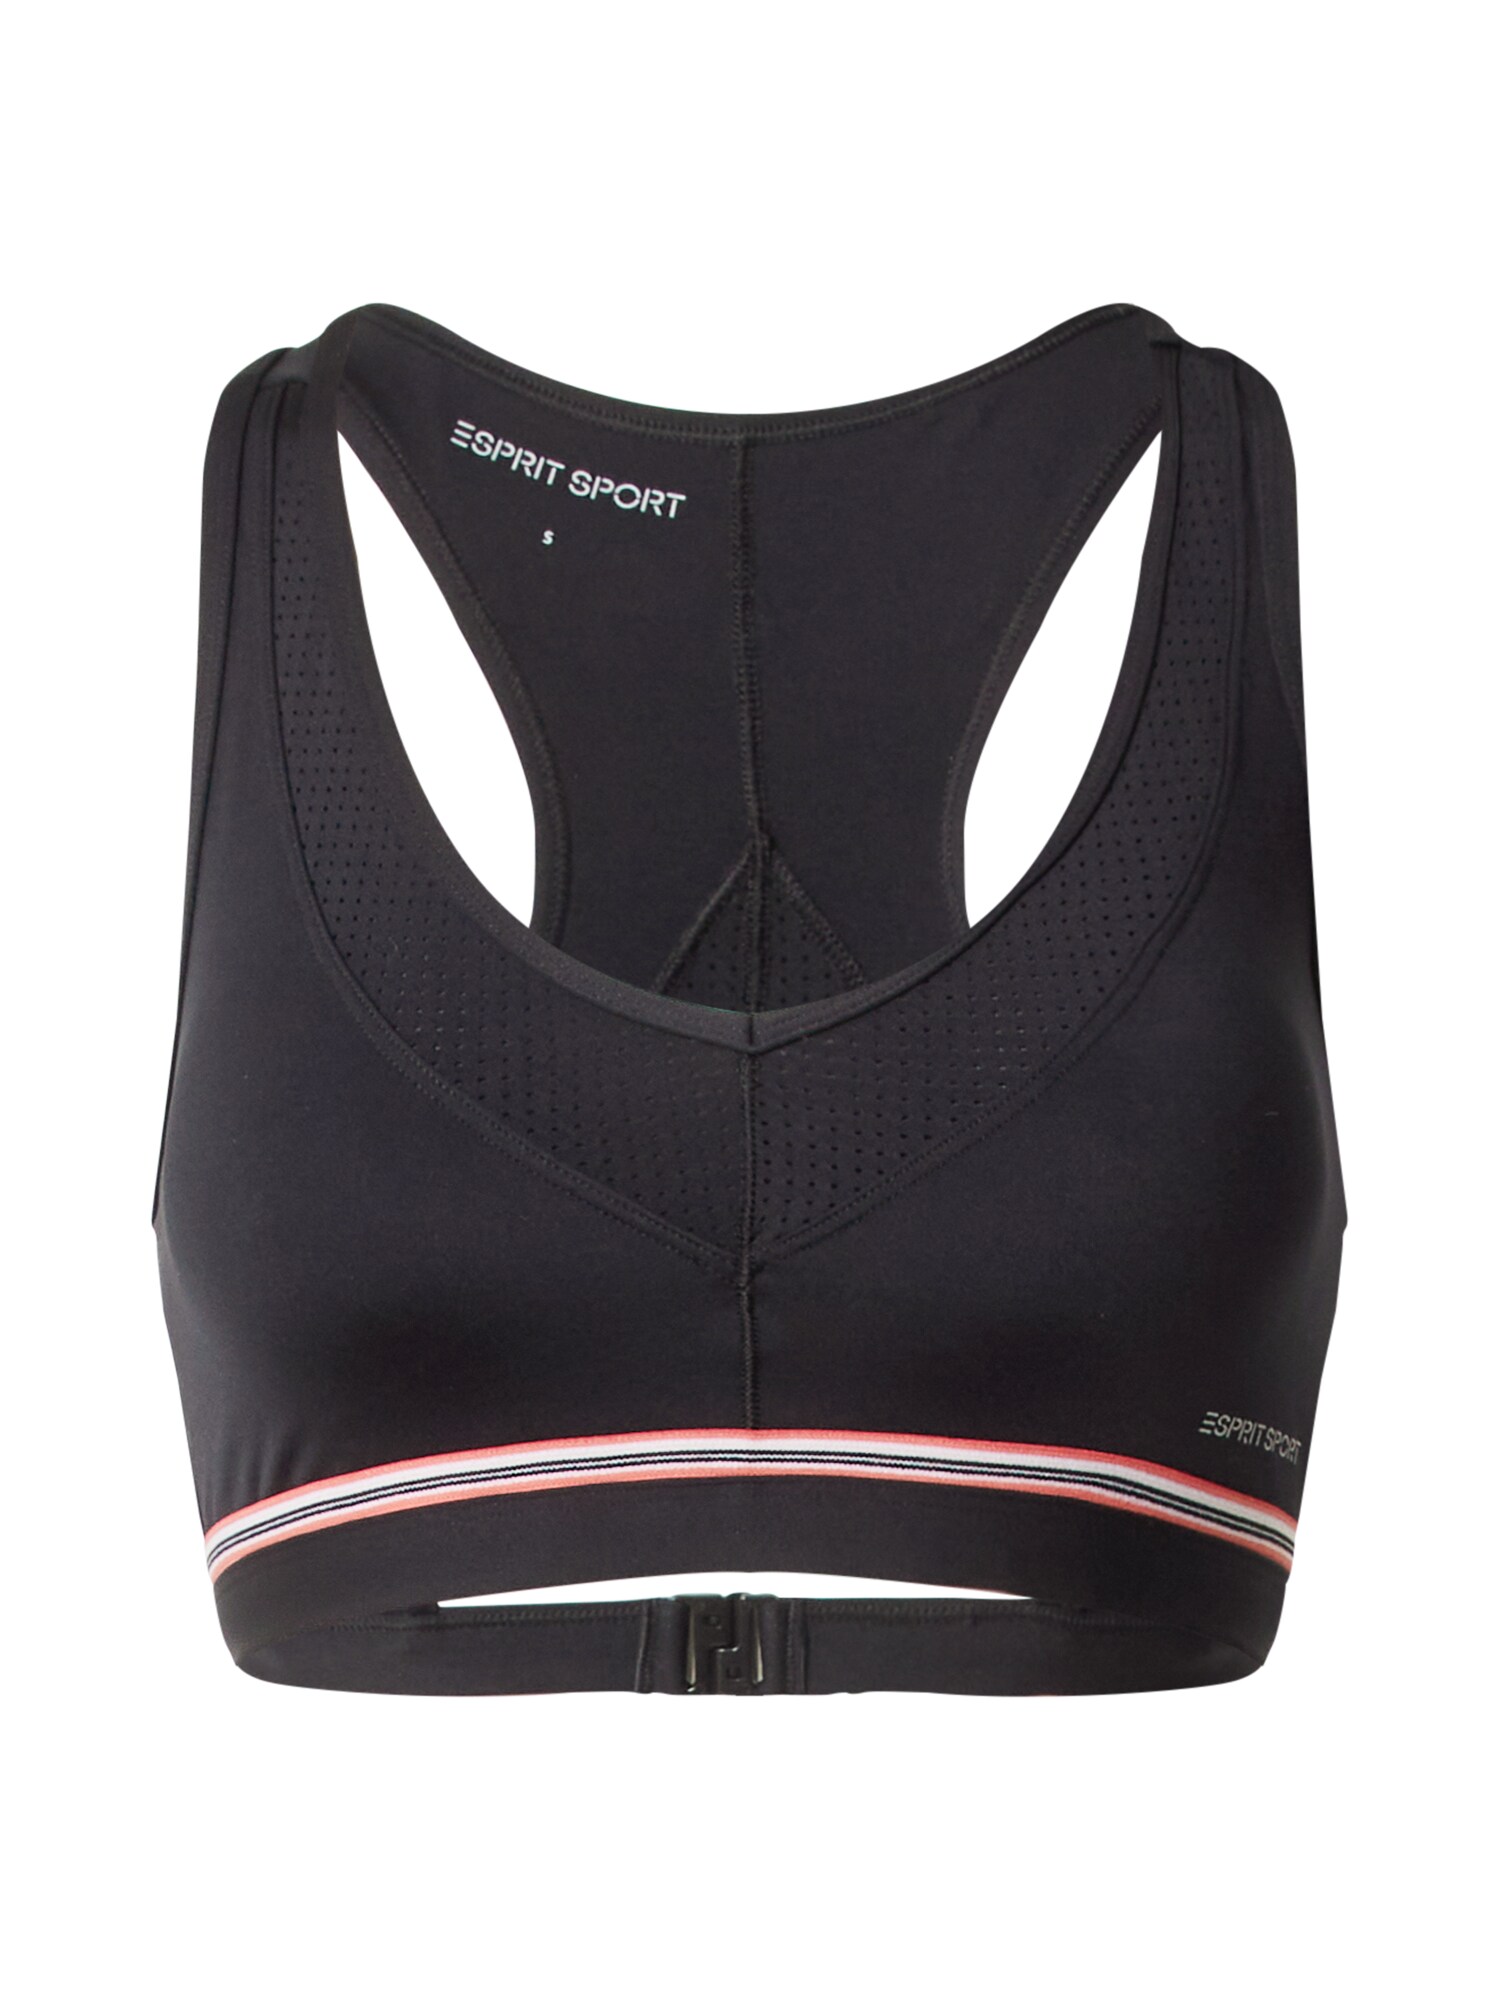 ESPRIT SPORT Sportinio bikinio viršutinė dalis juoda / rožių spalva